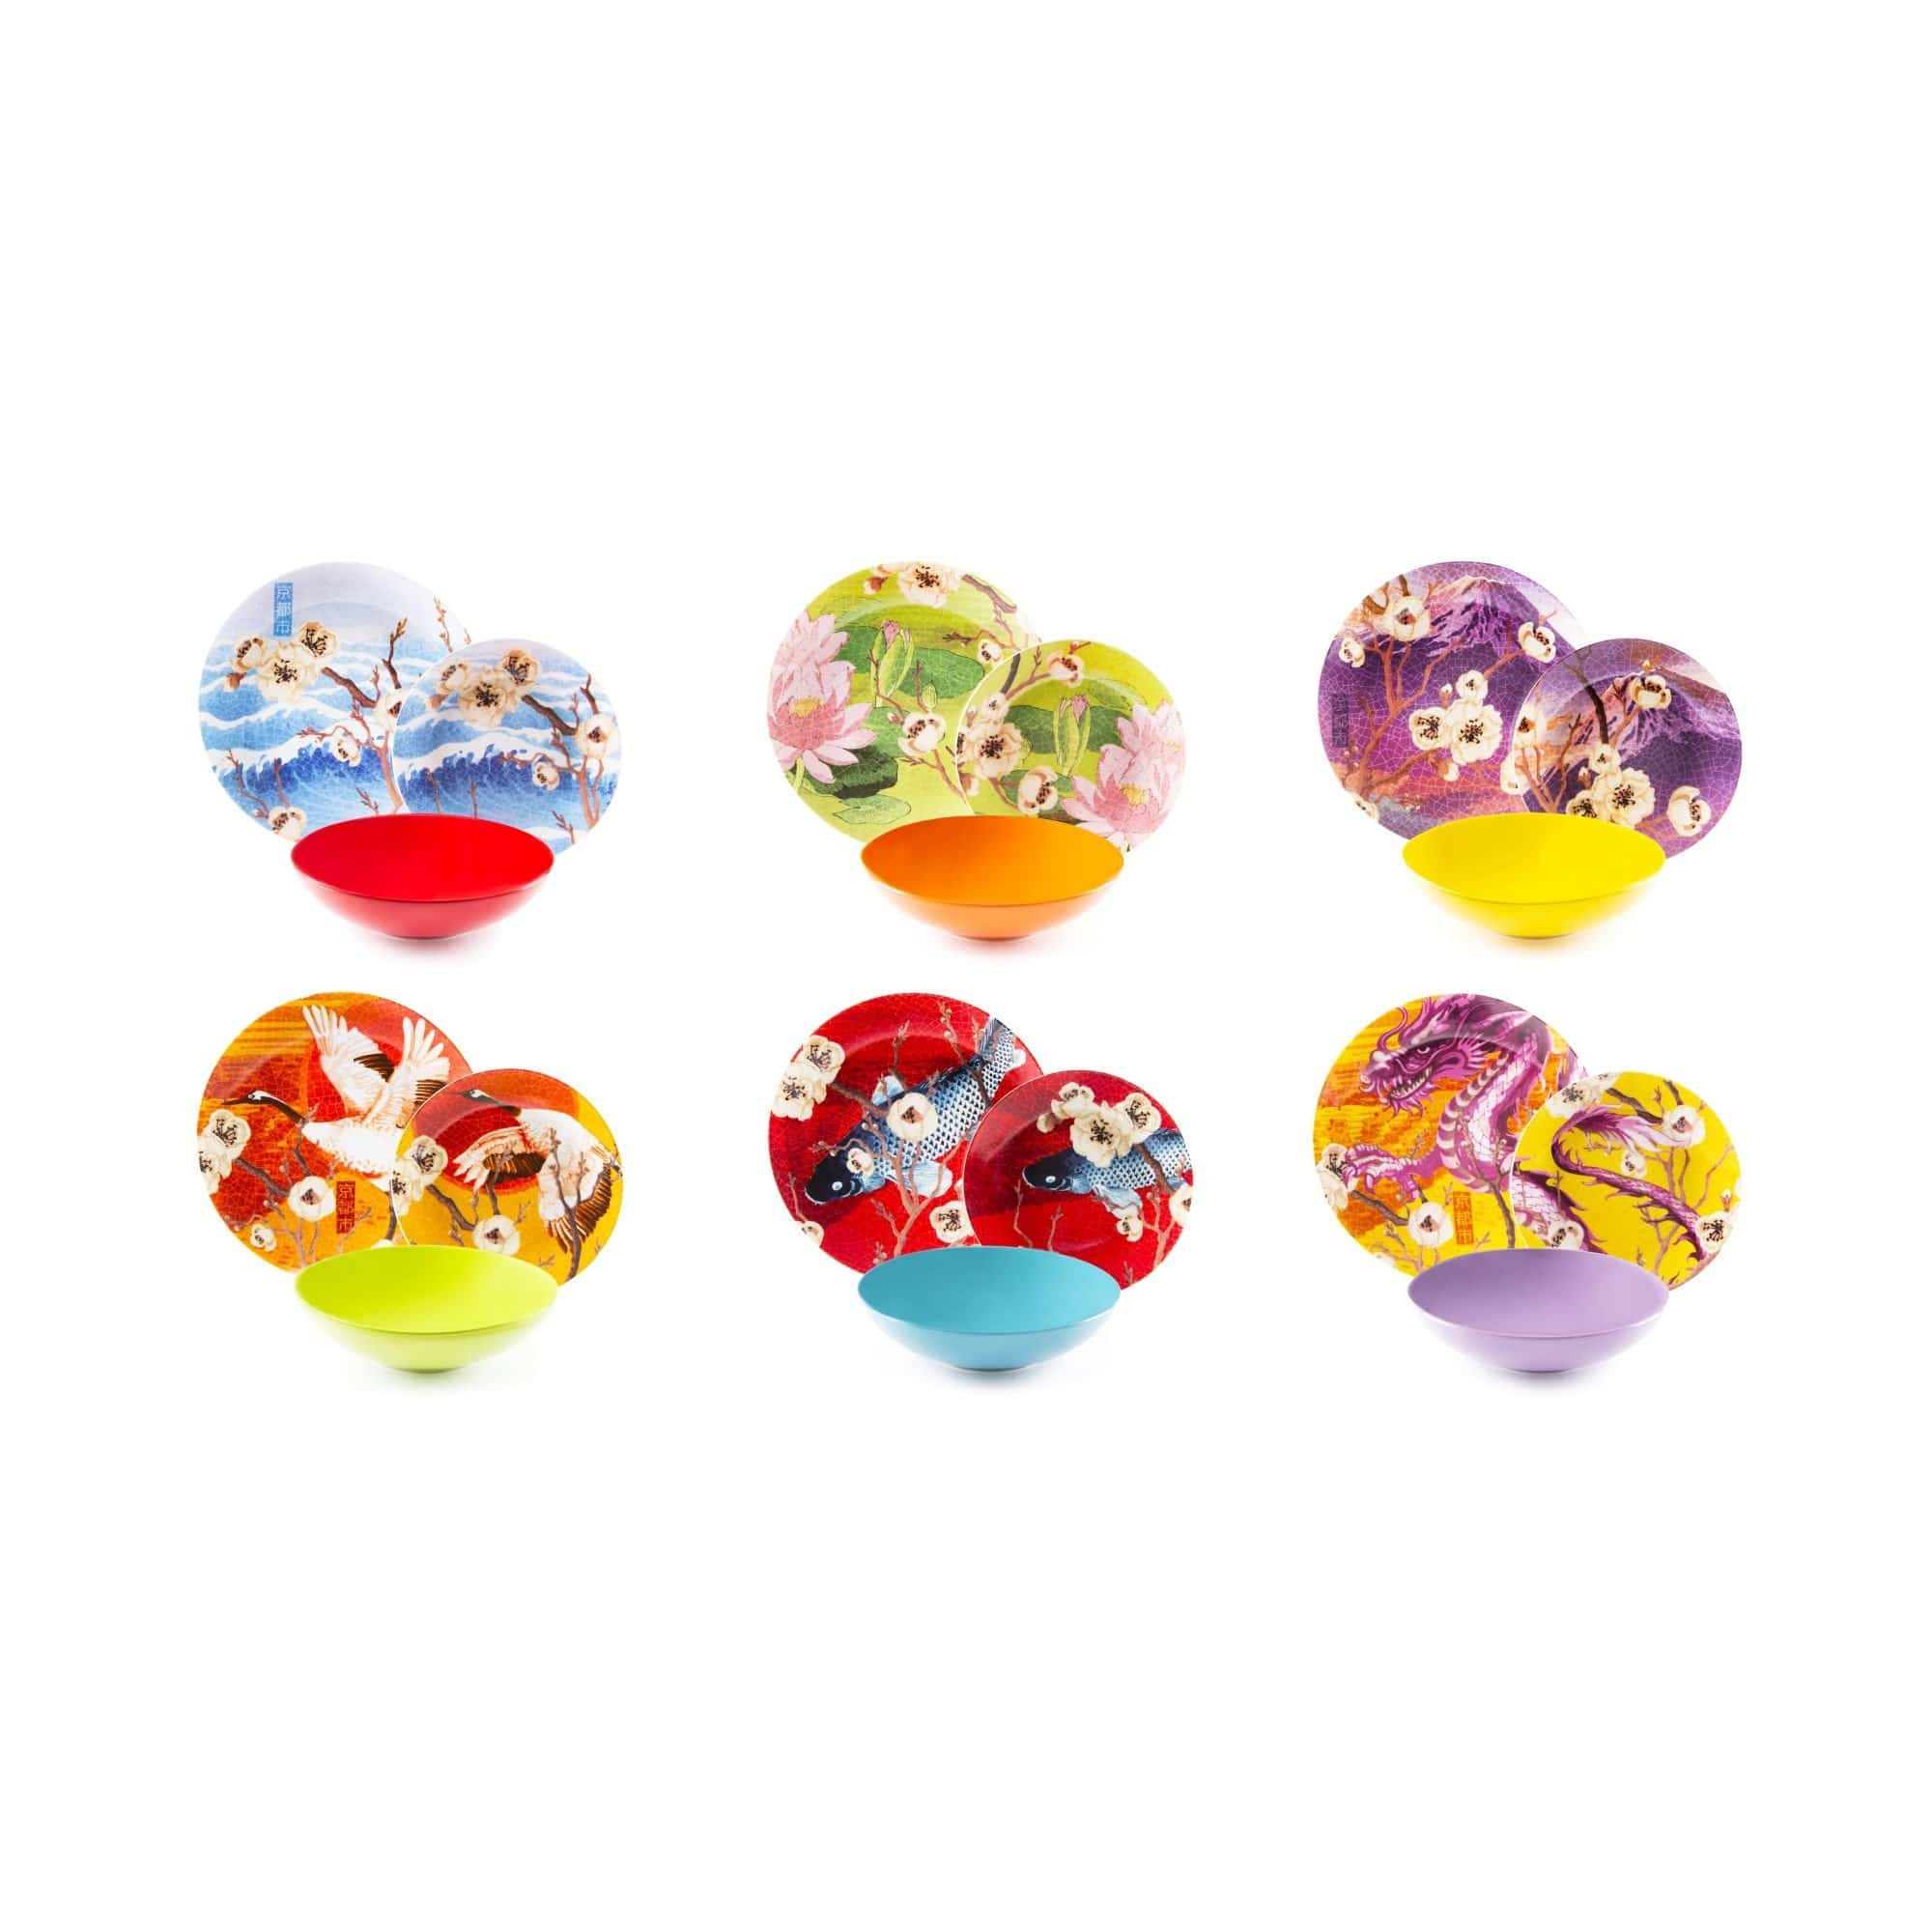 Kyoto Servizio Piatti 18 Pezzi, Porcellana e Ceramica, Multicolore 6 persone - Dolci pensieri gift